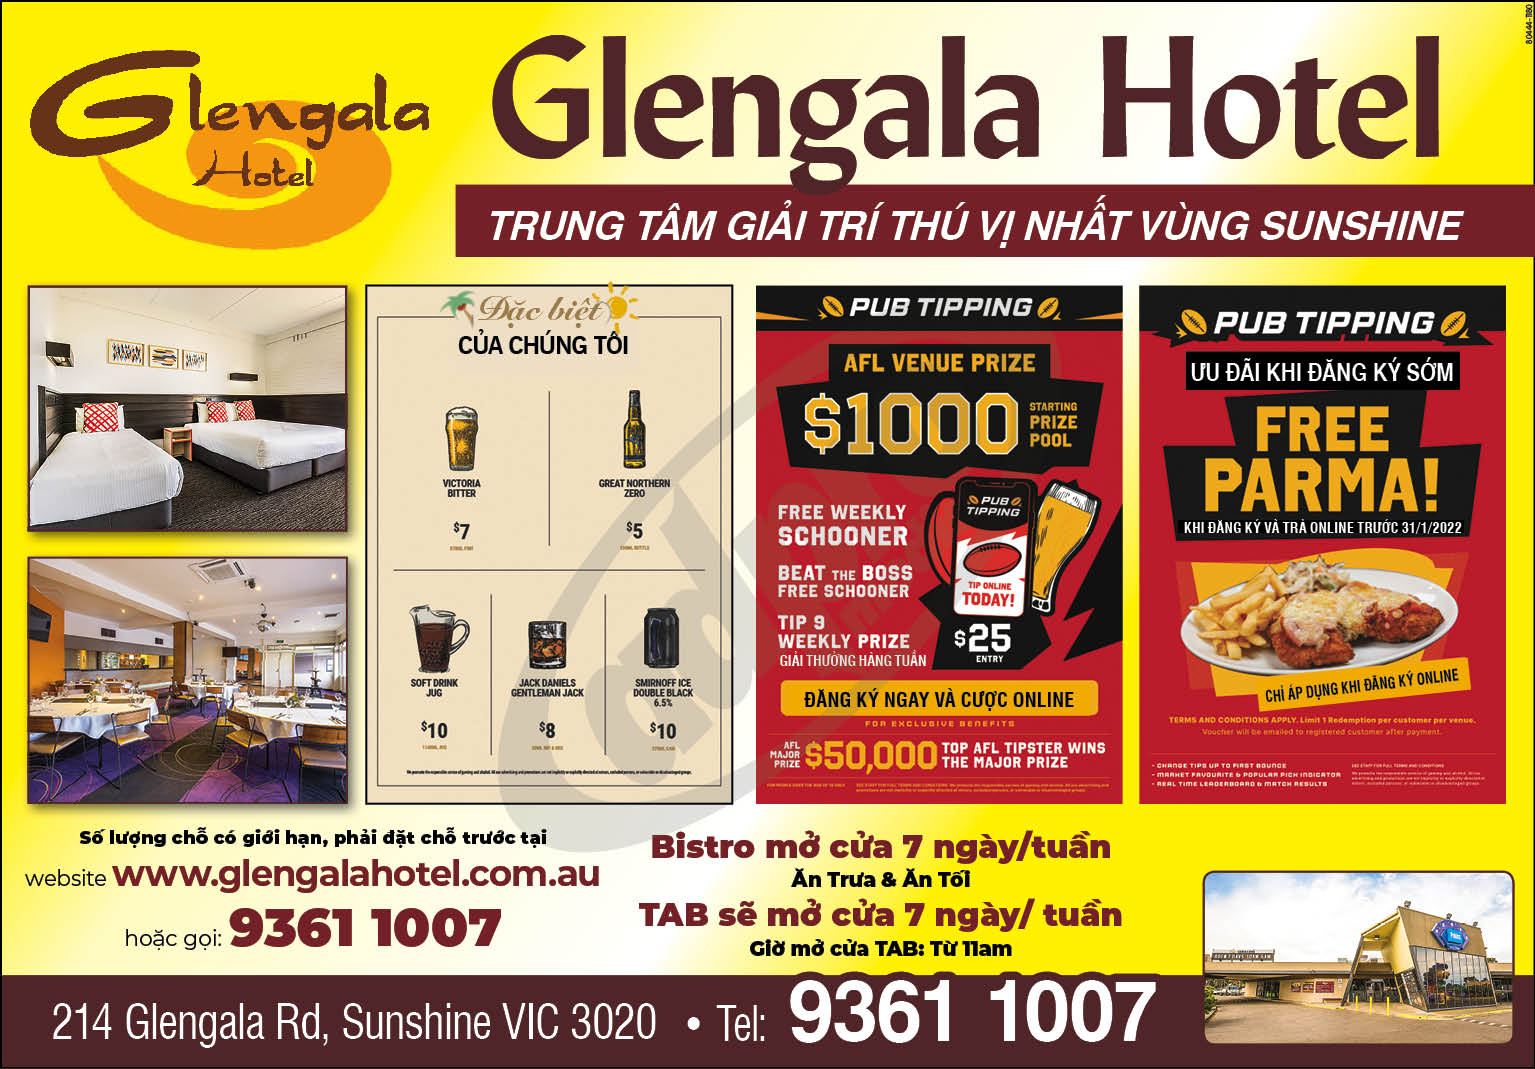 Glengala Hotel